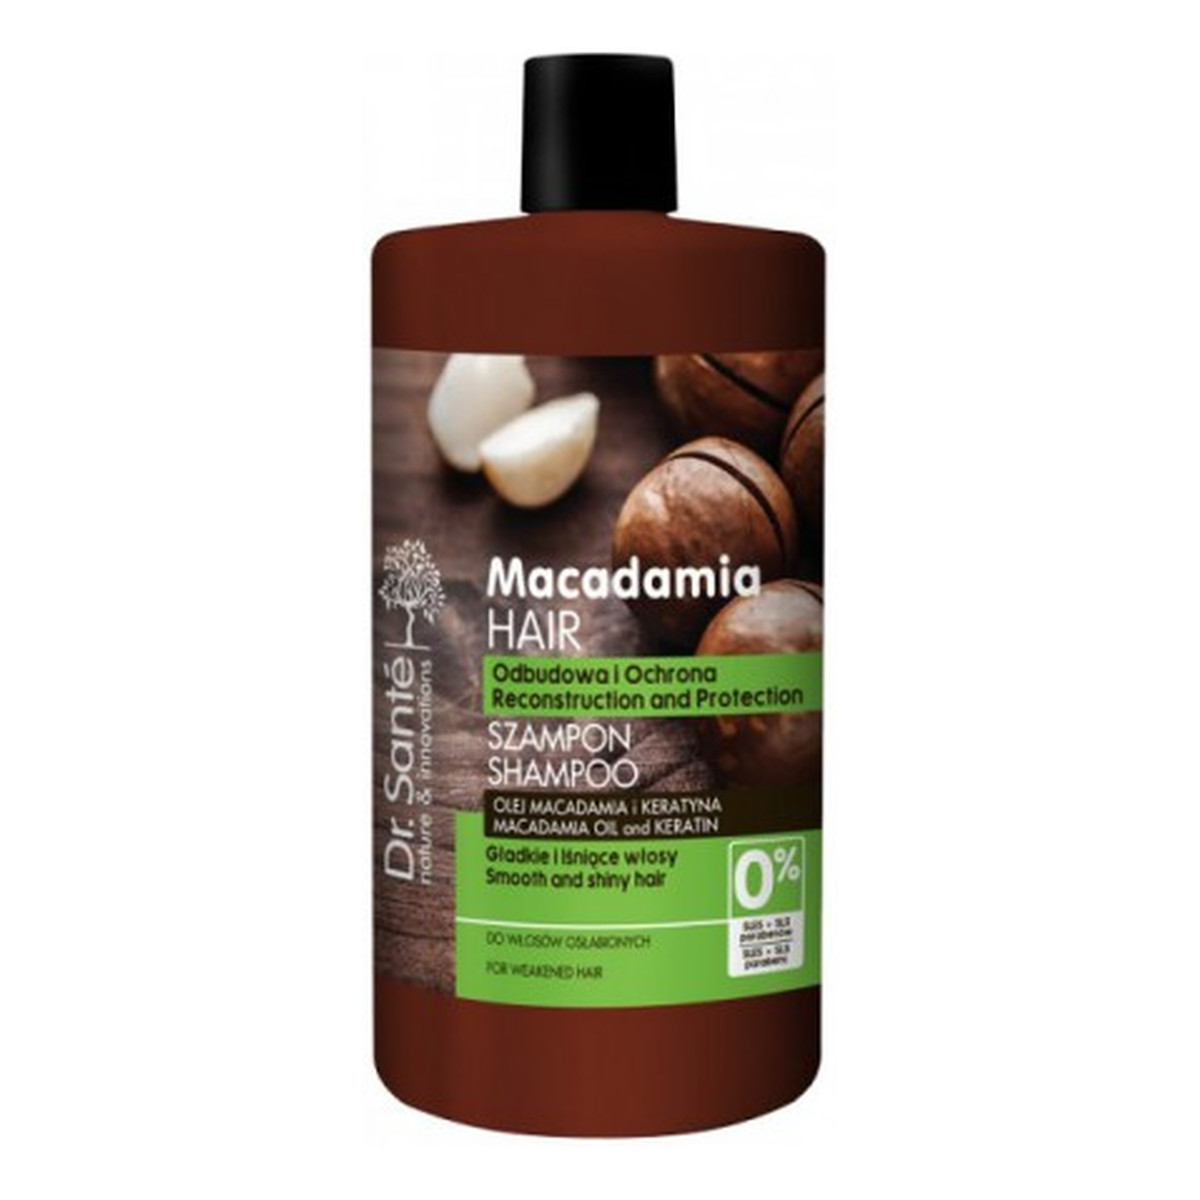 dr.sante macadamia szampon do włosów recenzja